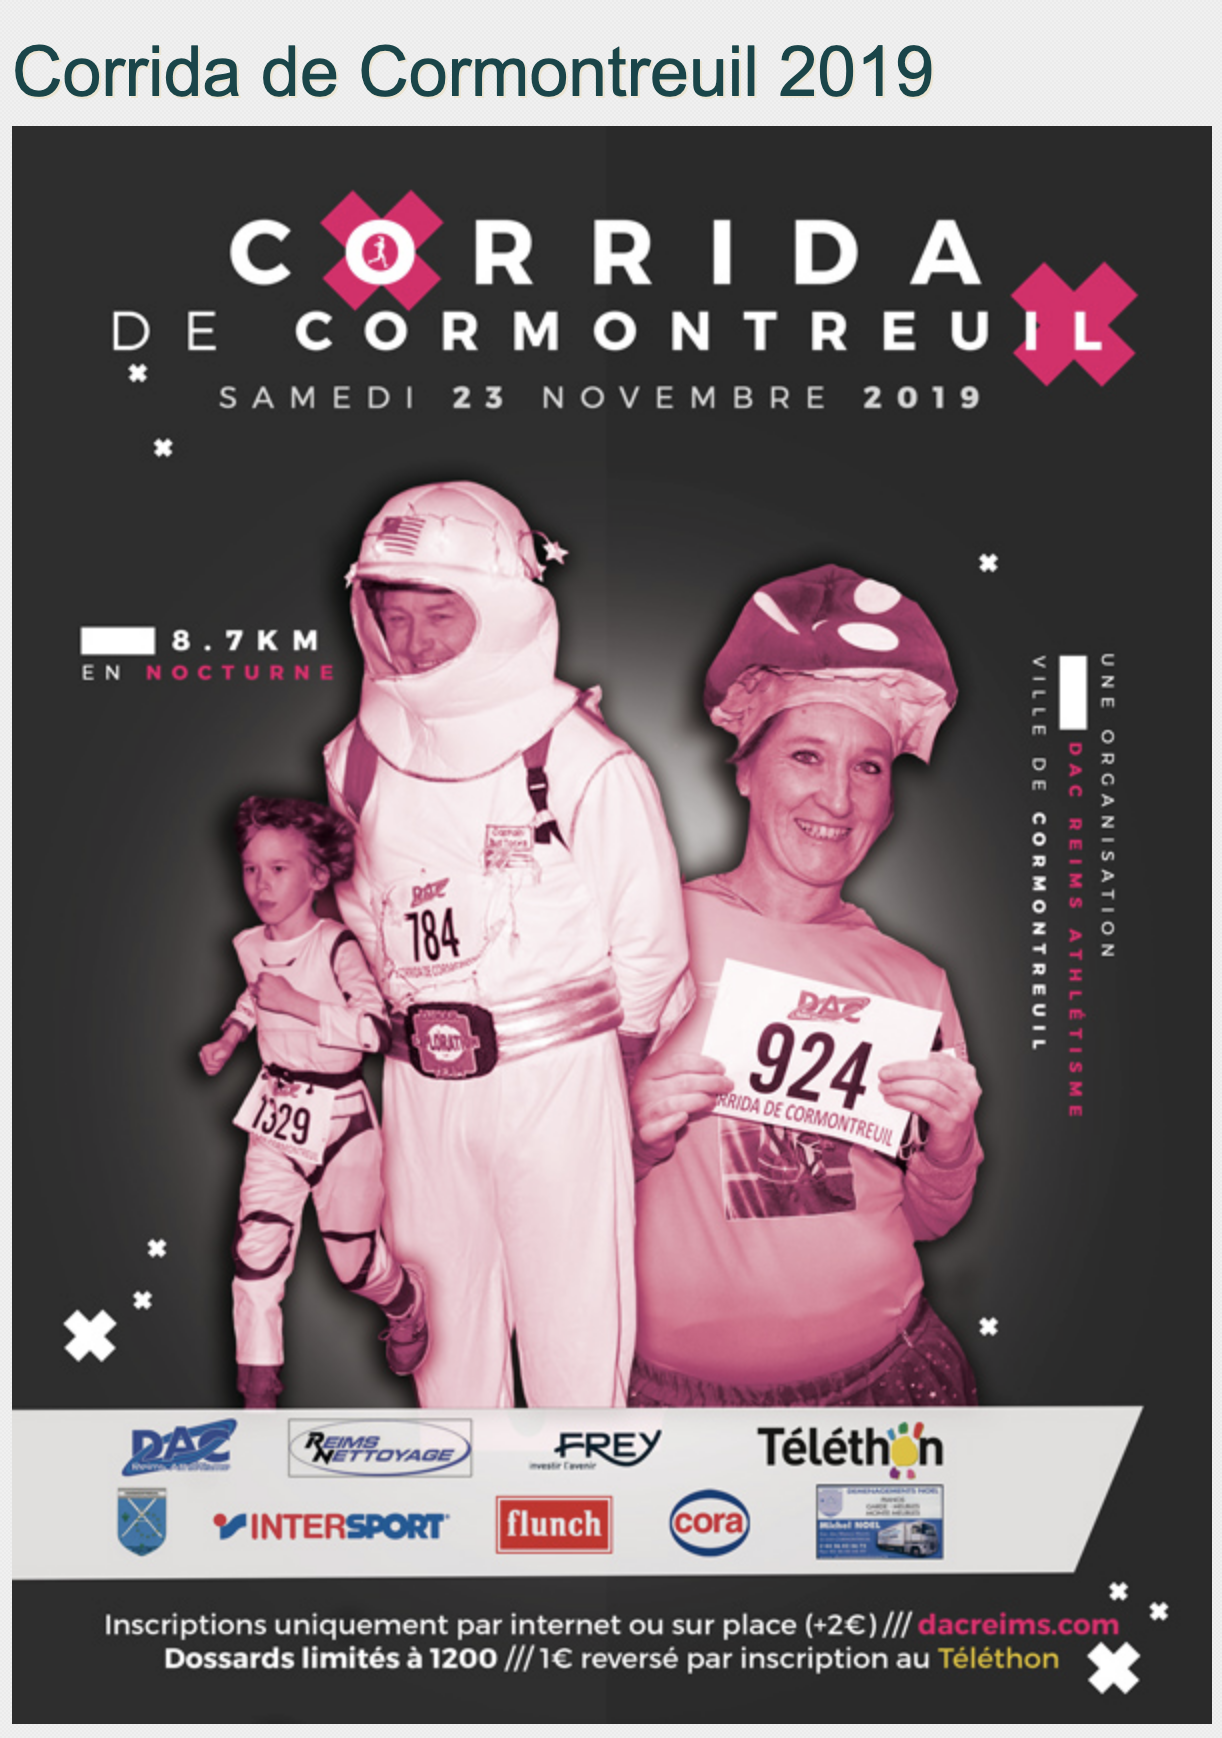 Cormontreuil corrida 23 novembre 2019 affiche